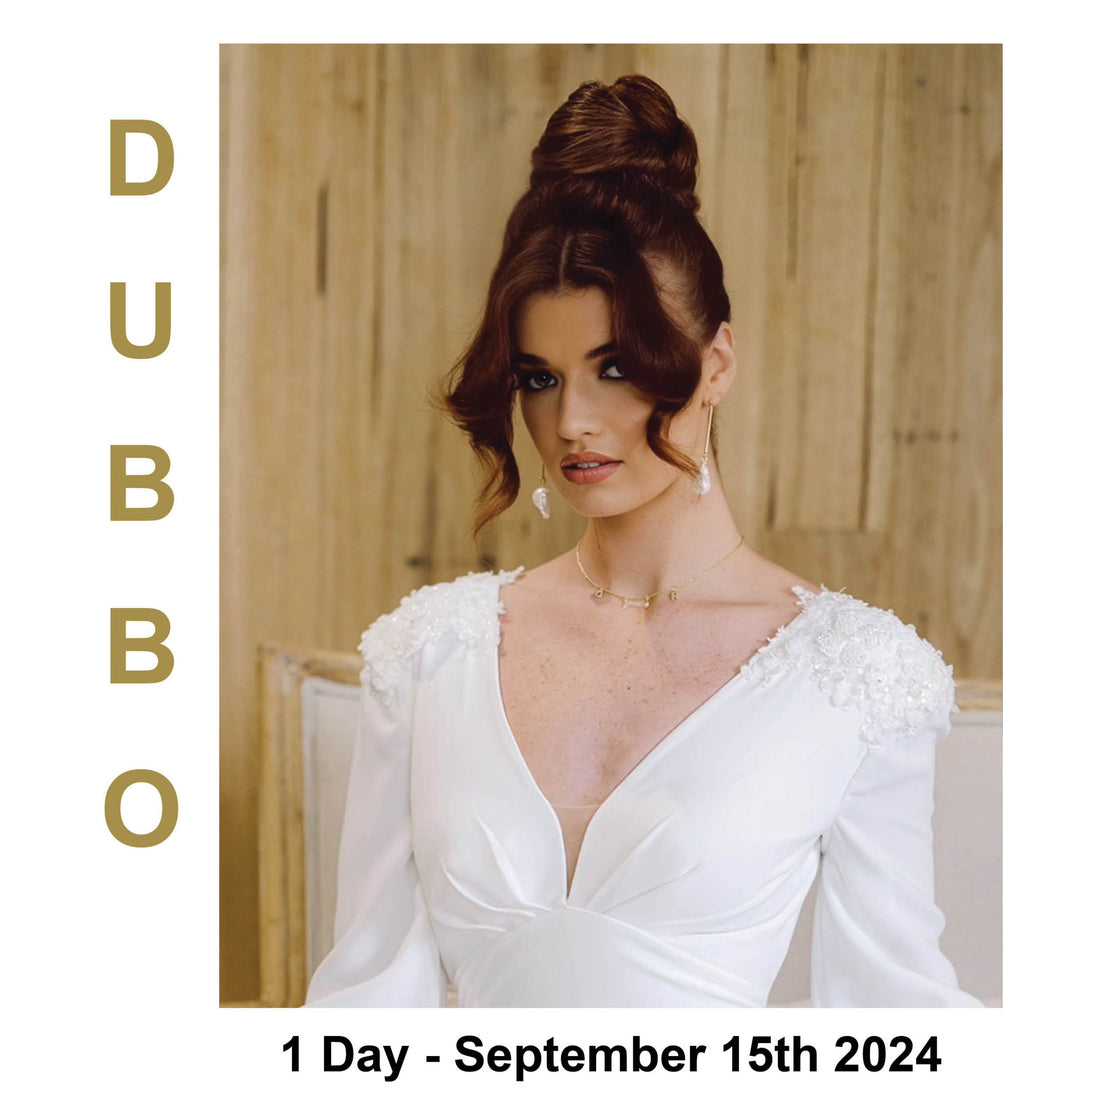 Dubbo - 1 Day Long Hair &amp; Bridal Workshop September 15th 2024